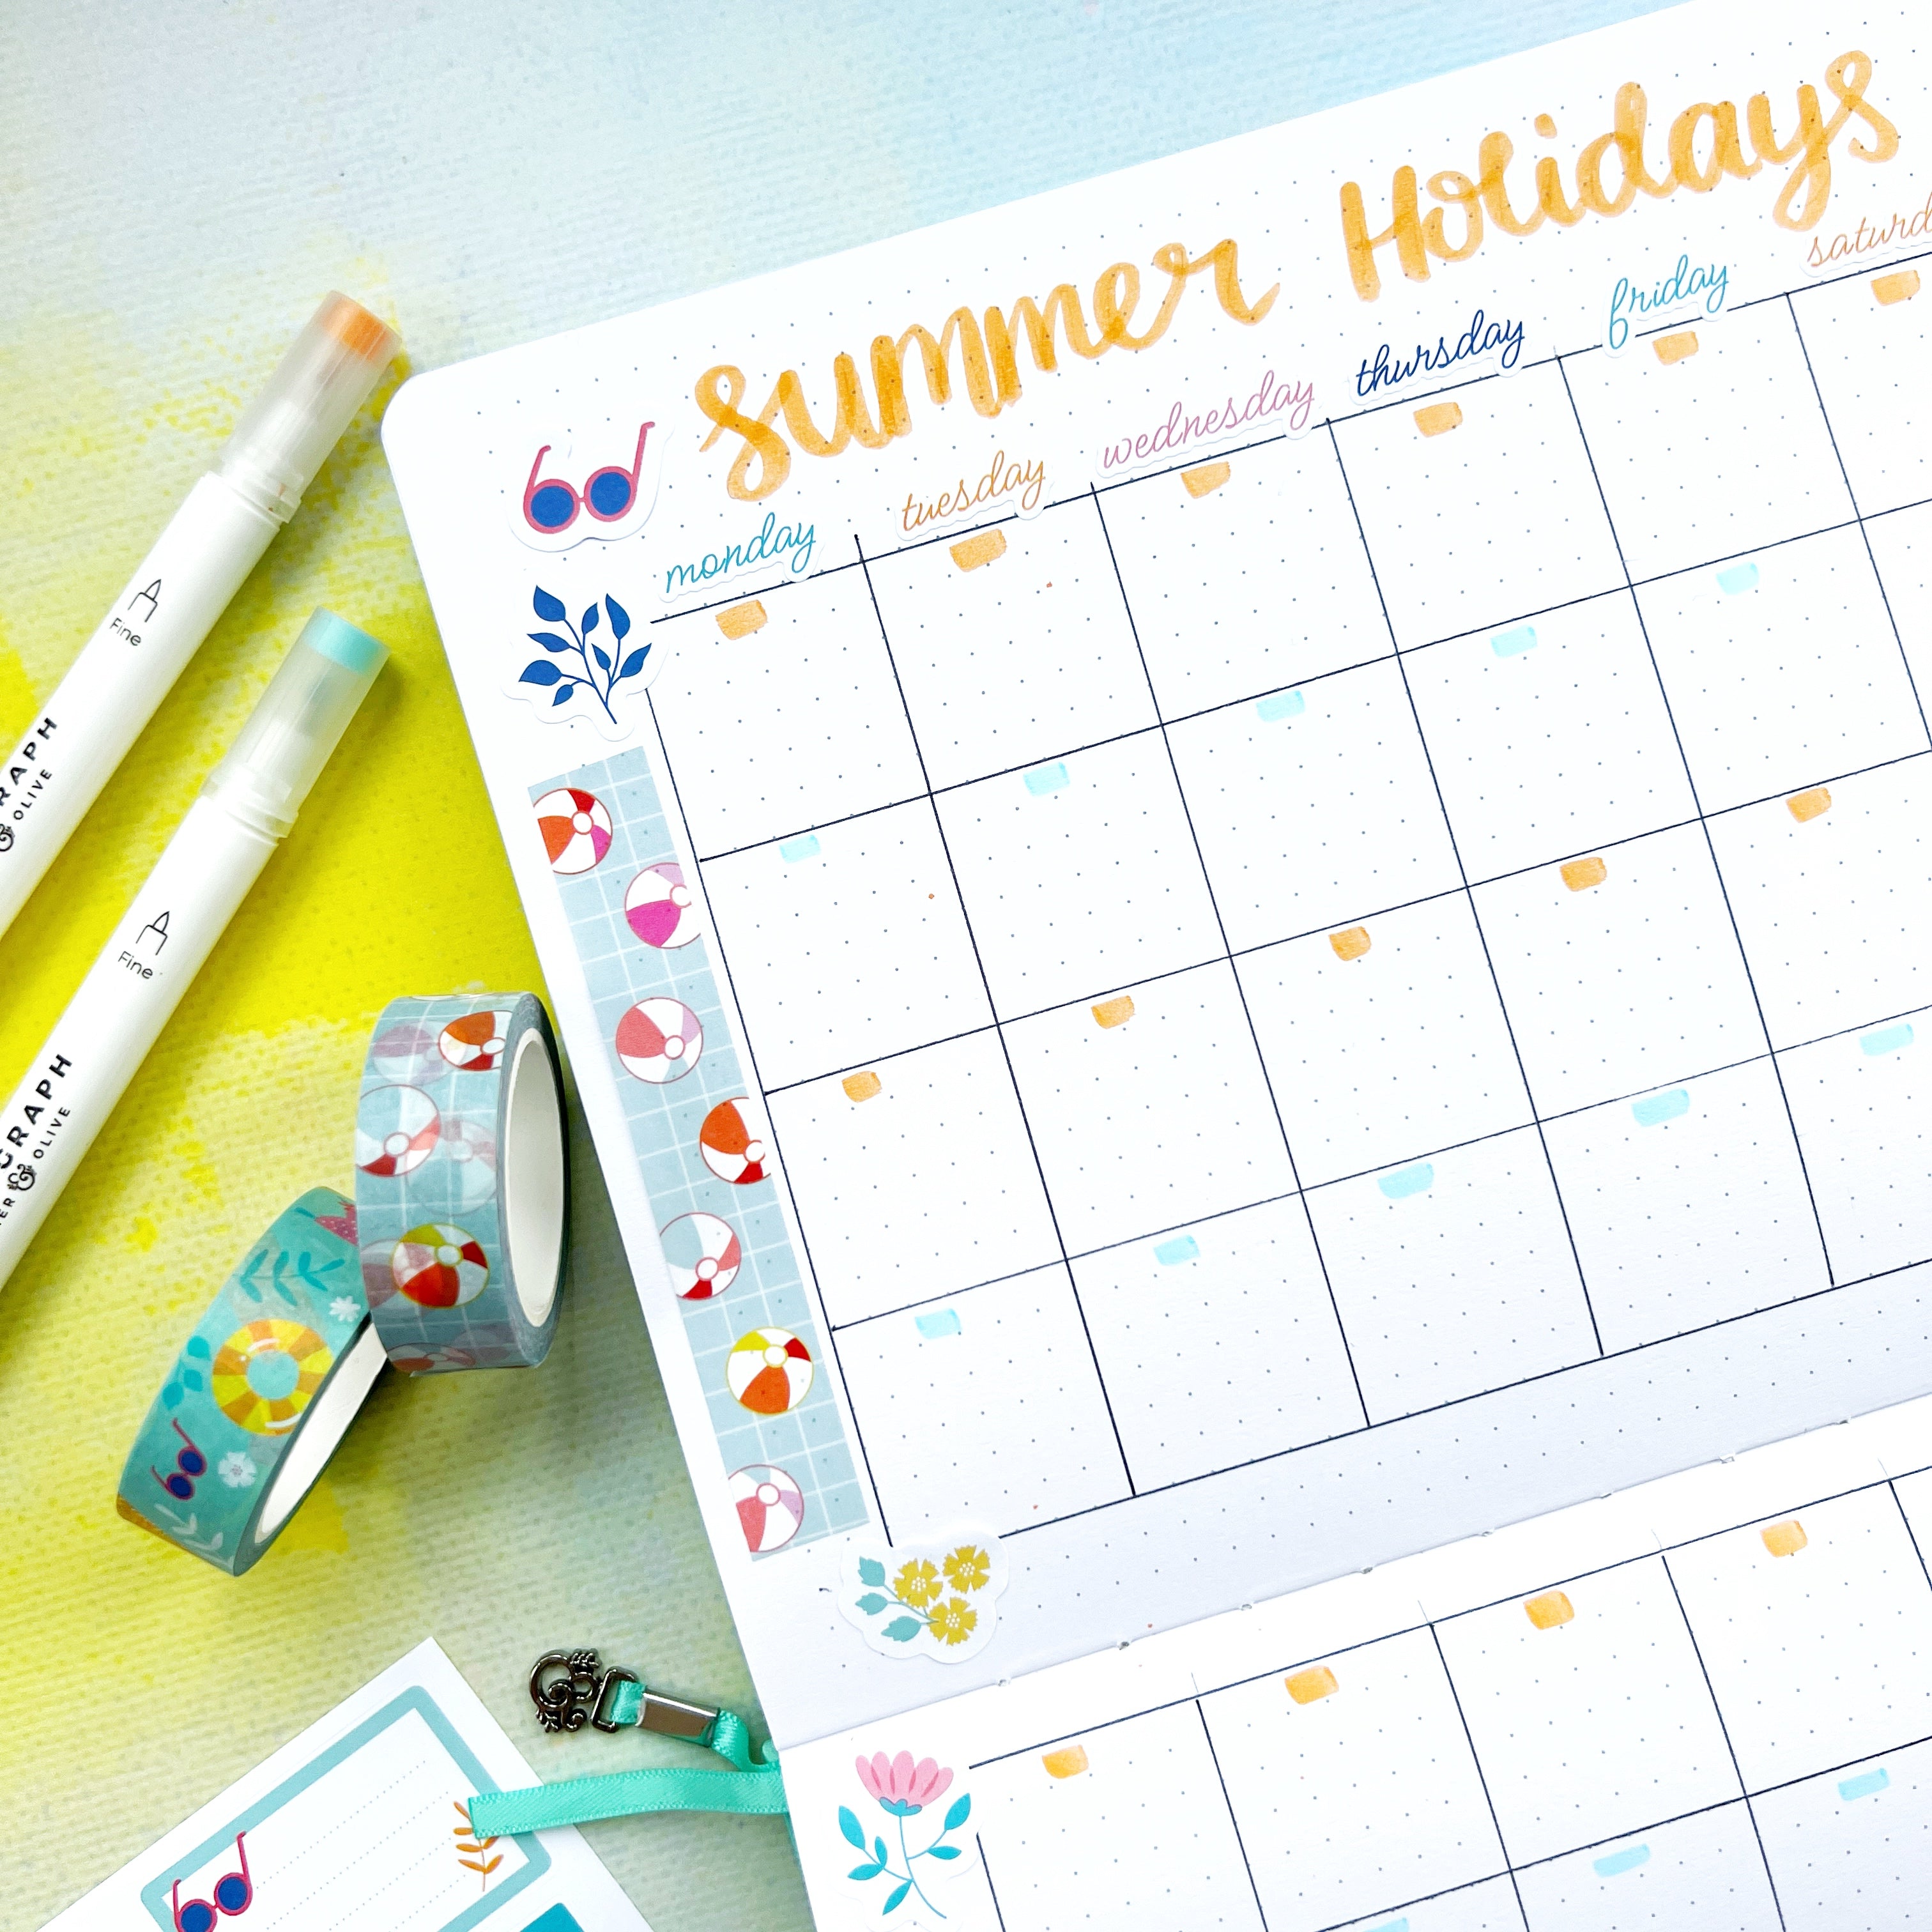 Top Tips for Planning your Kids' Summer Break